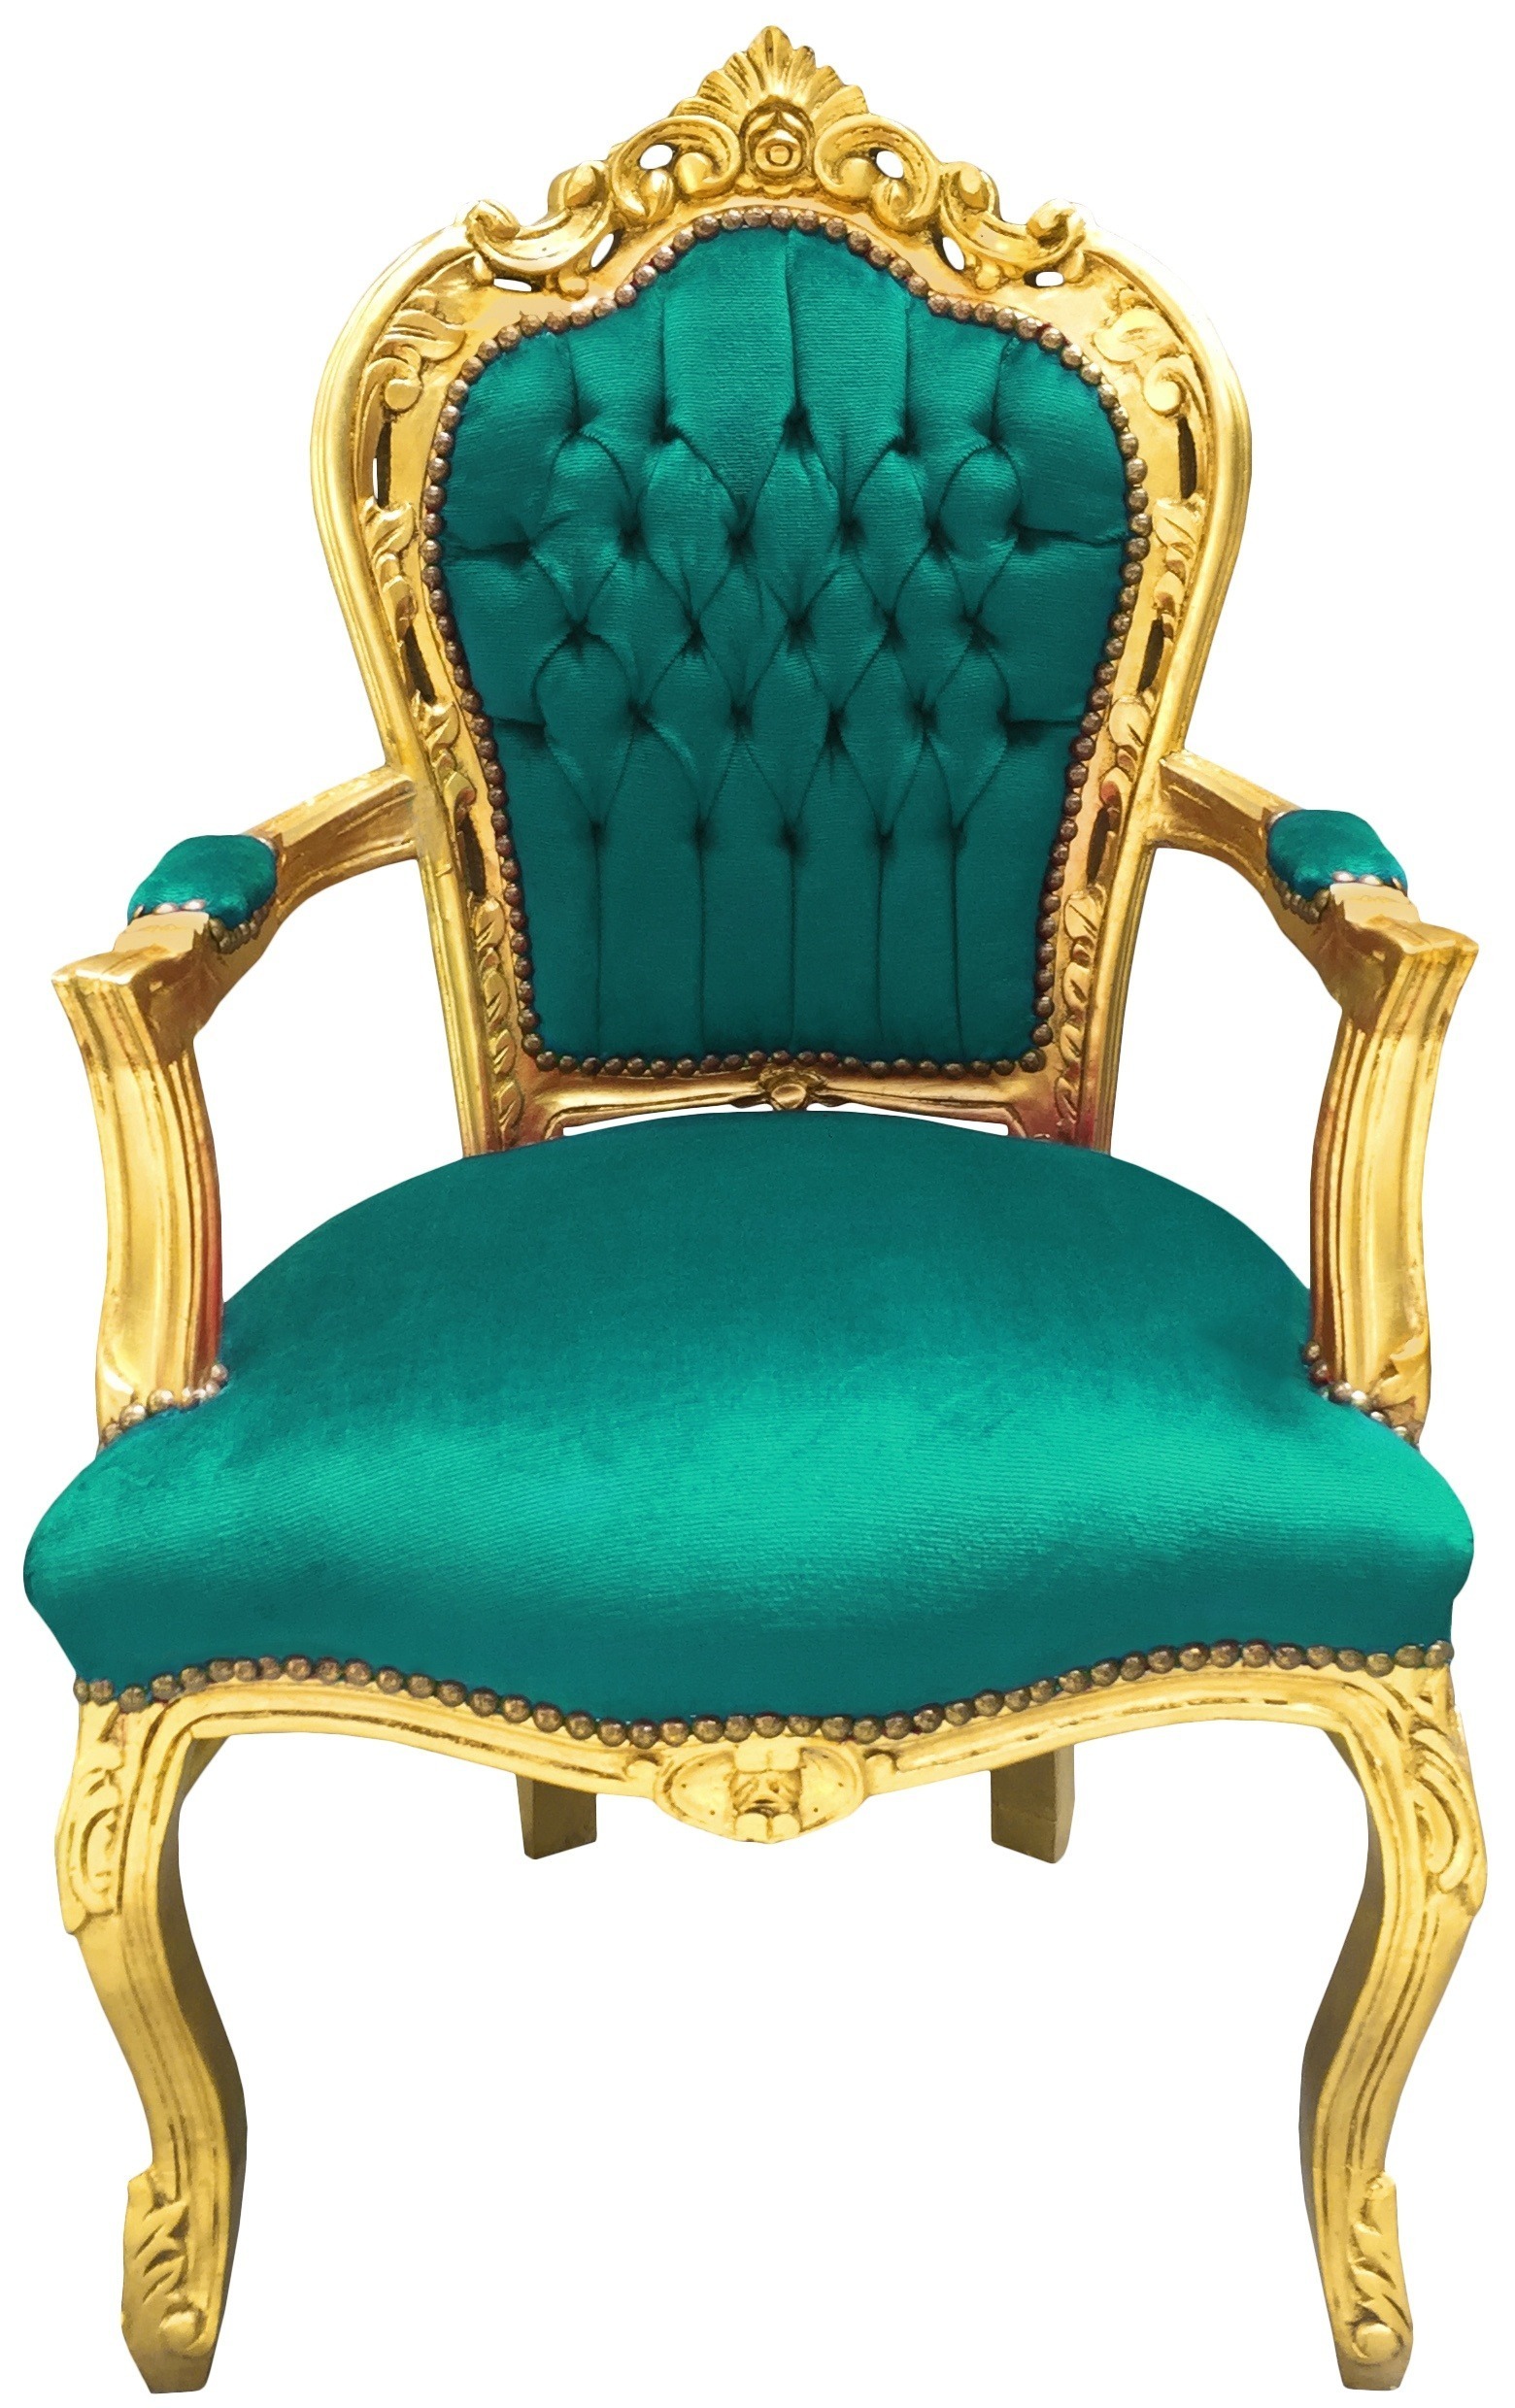 Barok Rococo fauteuil stijl groen en goud hout